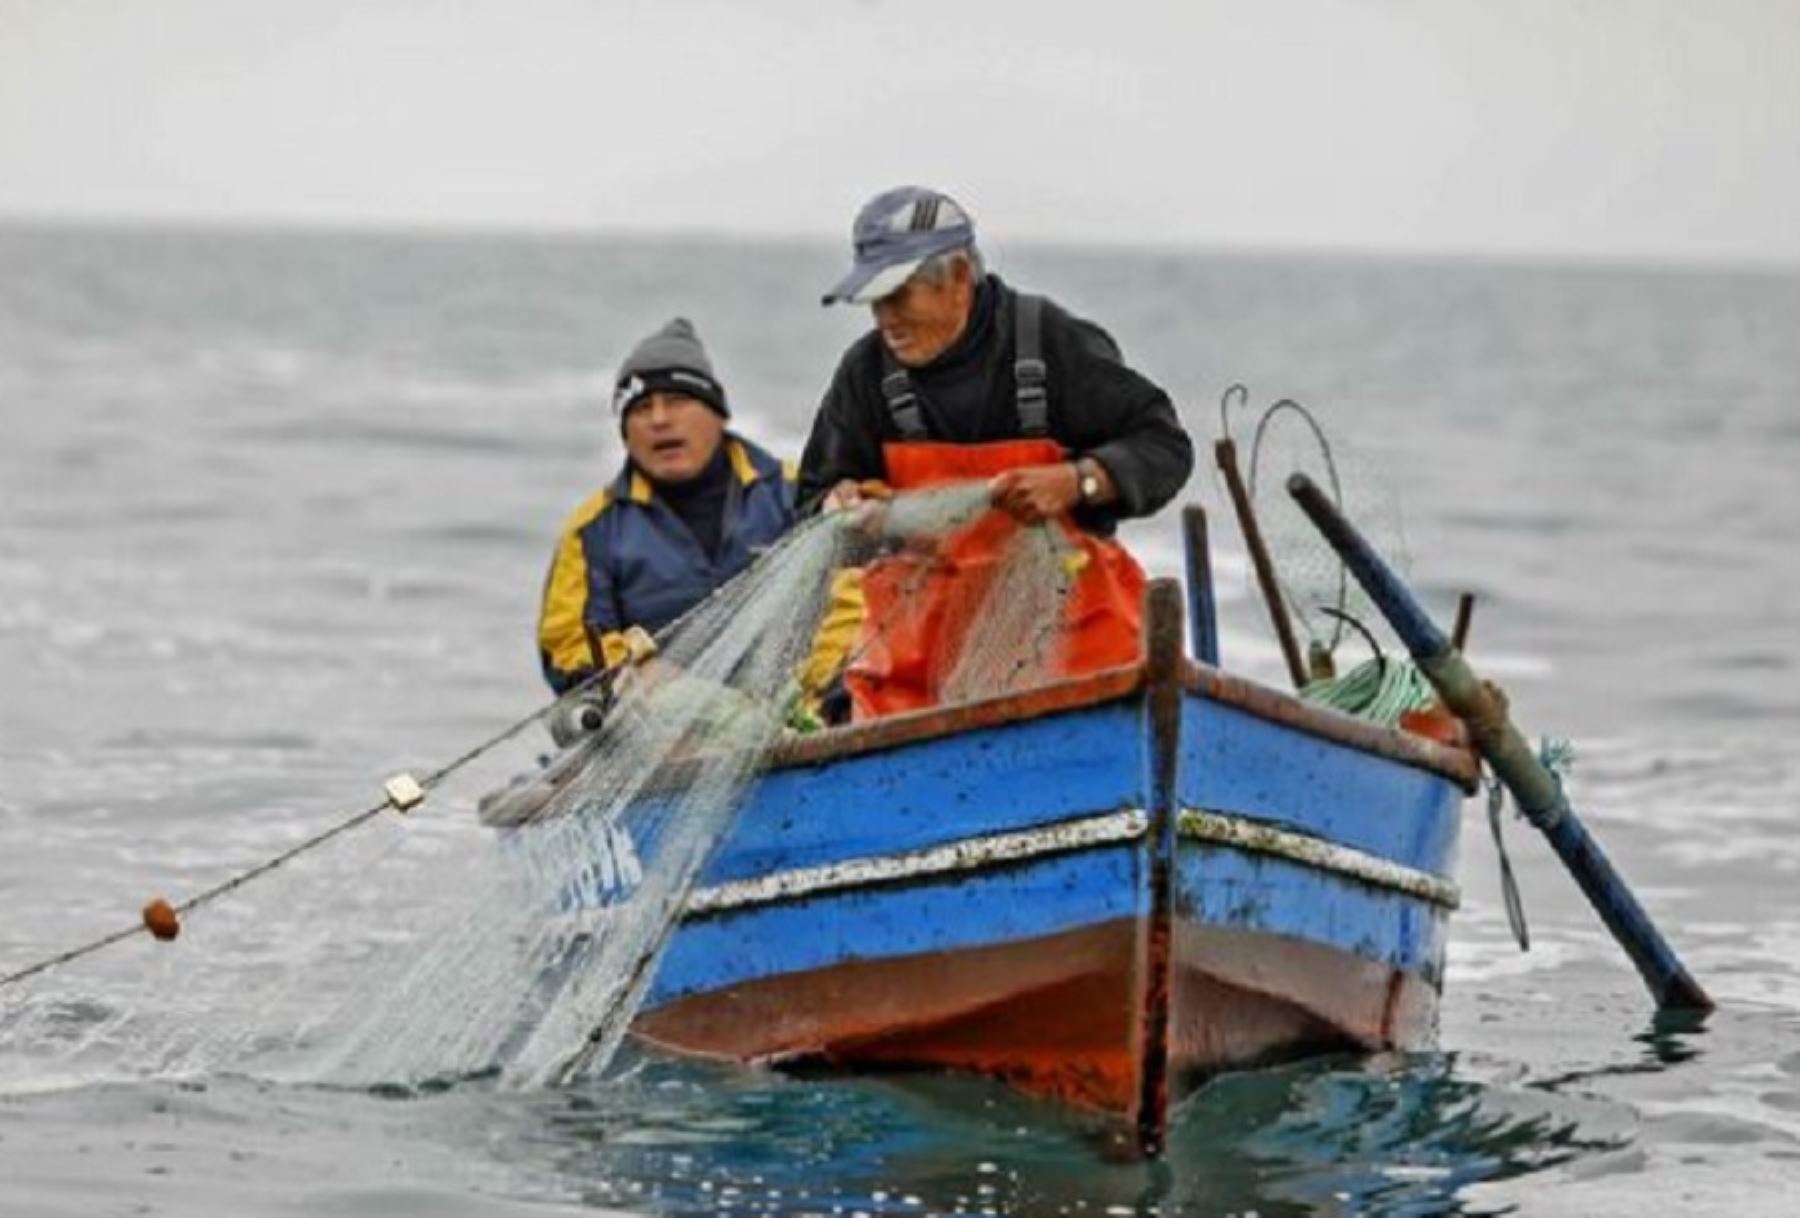 Perú suscribió un compromiso internacional que busca preservar el conocimiento tradicional de las comunidades pesqueras milenarias que desarrollan sus labores en embarcaciones artesanales y que no usan motor.